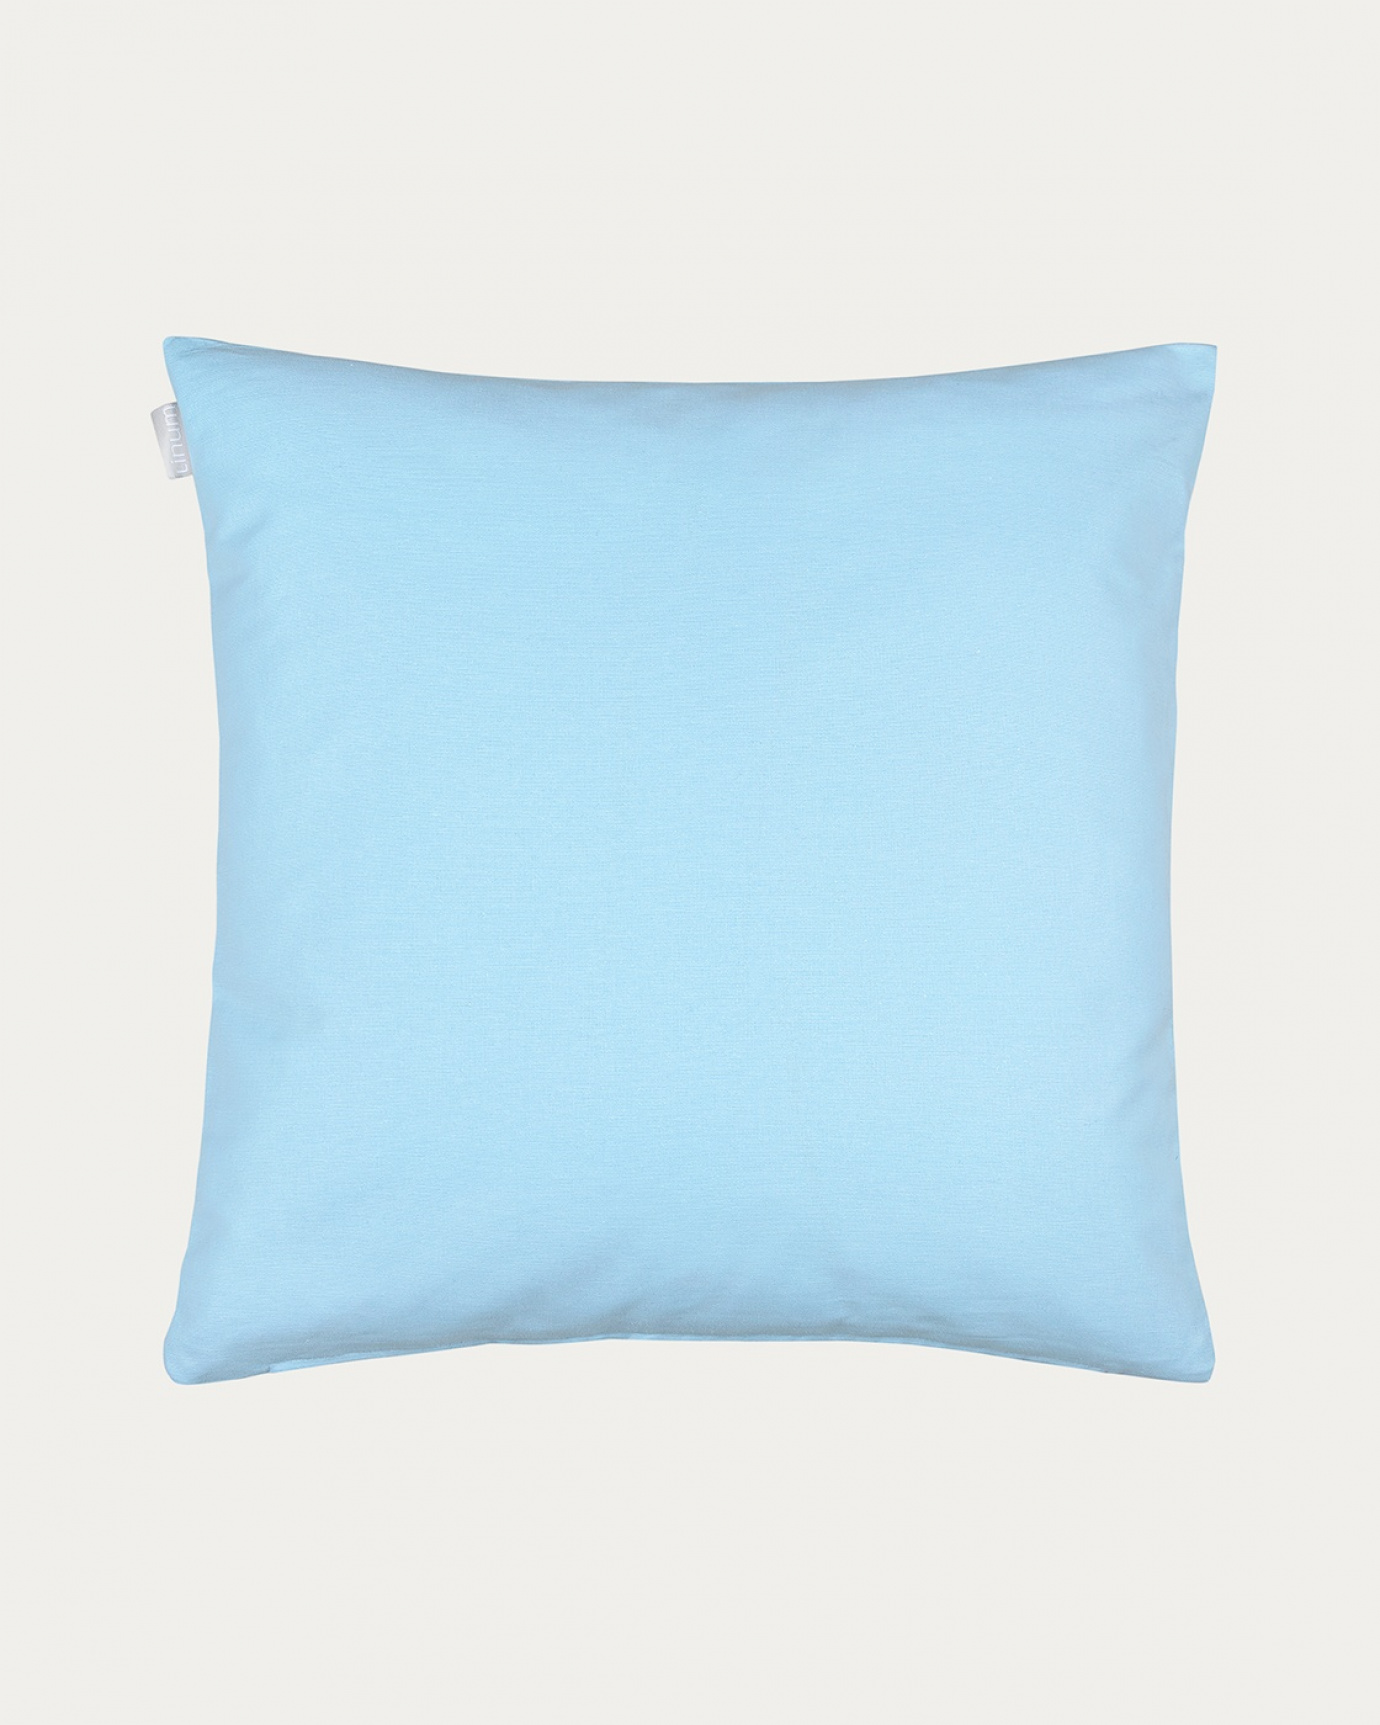 Produktbild helles himmelblau ANNABELL Kissenhülle aus weicher Baumwolle von LINUM DESIGN. Größe 50x50 cm.